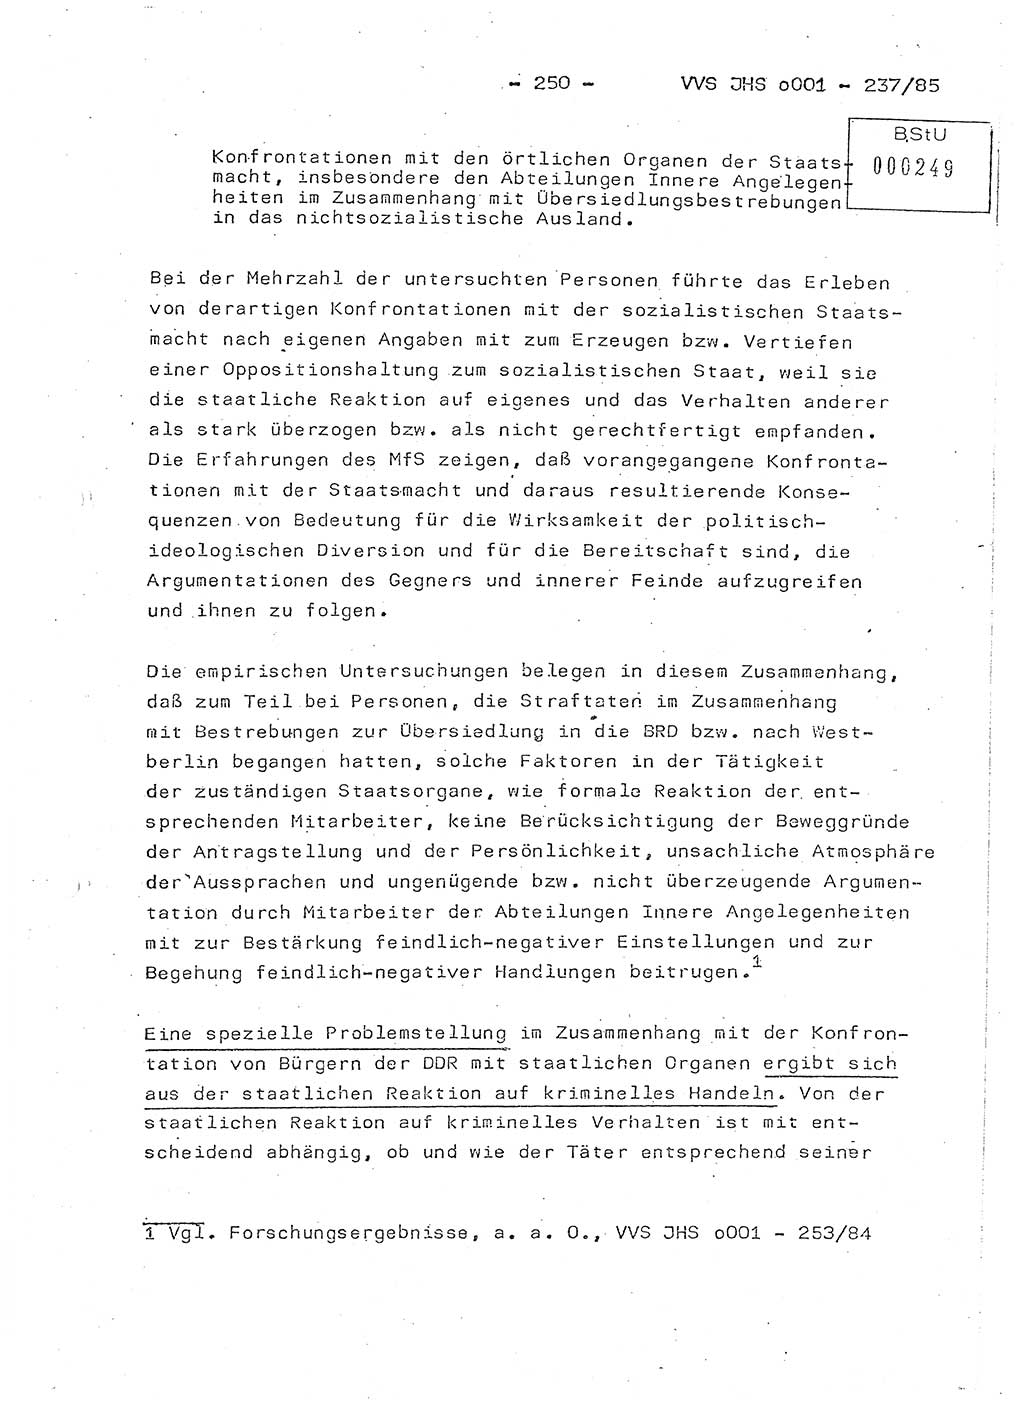 Dissertation Oberstleutnant Peter Jakulski (JHS), Oberstleutnat Christian Rudolph (HA Ⅸ), Major Horst Böttger (ZMD), Major Wolfgang Grüneberg (JHS), Major Albert Meutsch (JHS), Ministerium für Staatssicherheit (MfS) [Deutsche Demokratische Republik (DDR)], Juristische Hochschule (JHS), Vertrauliche Verschlußsache (VVS) o001-237/85, Potsdam 1985, Seite 250 (Diss. MfS DDR JHS VVS o001-237/85 1985, S. 250)